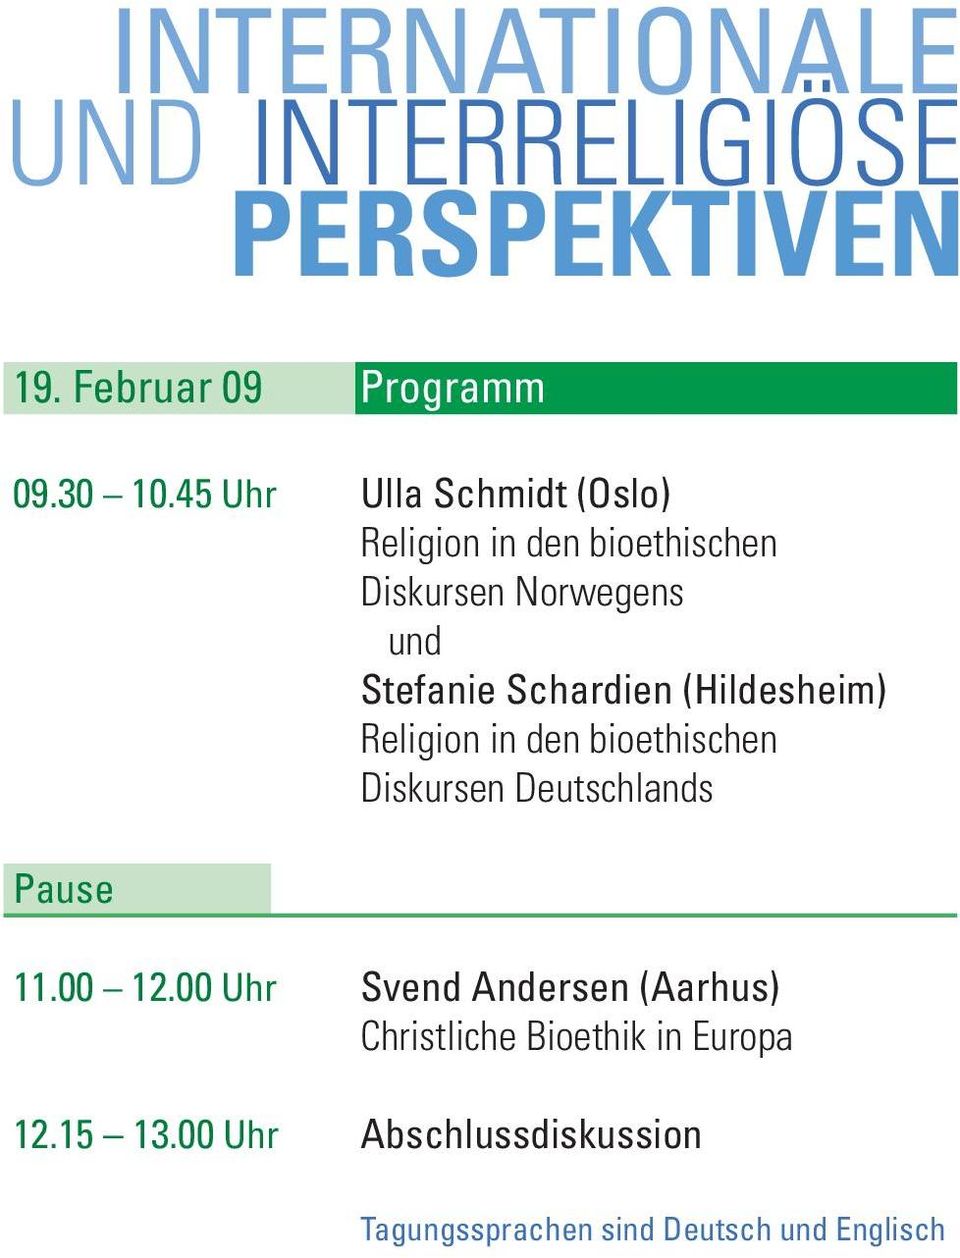 Schardien (Hildesheim) Religion in den bioethischen Diskursen Deutschlands 11.00 12.